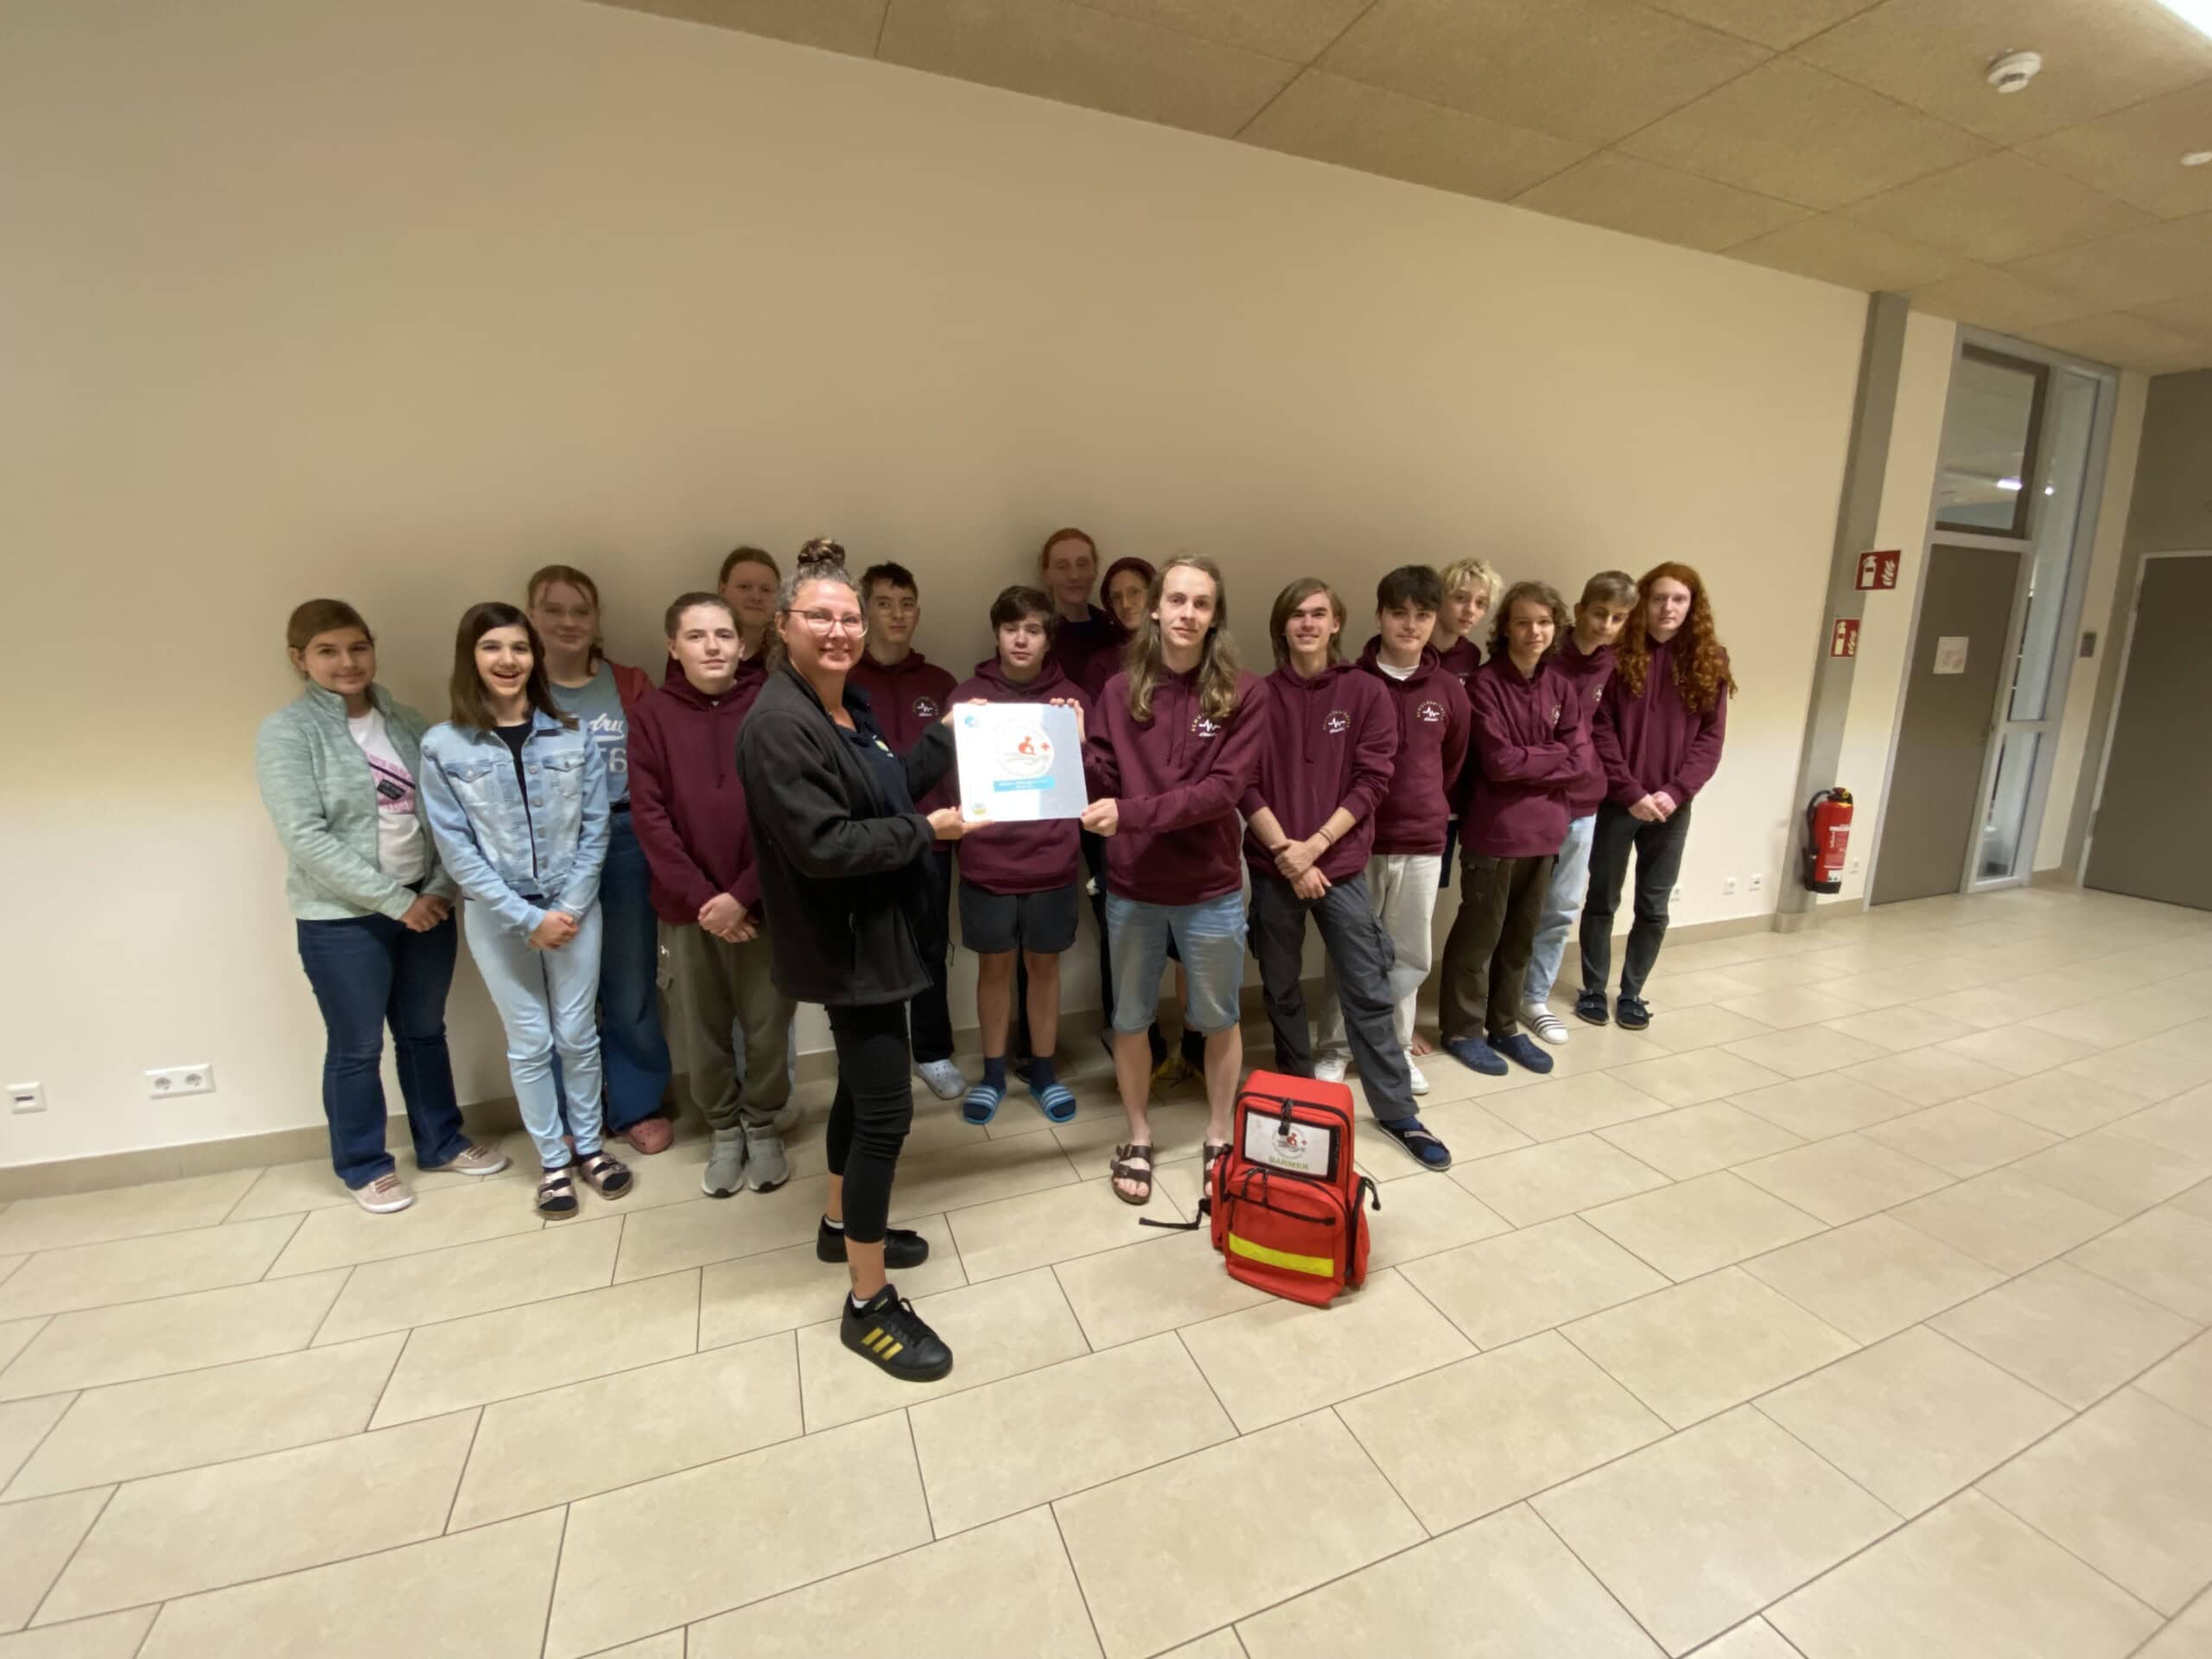 Auszeichnung vom Jugendrotkreuz für die Schulsanitäter:innen der Freien element-i Gemeinschaftsschule Karlsruhe